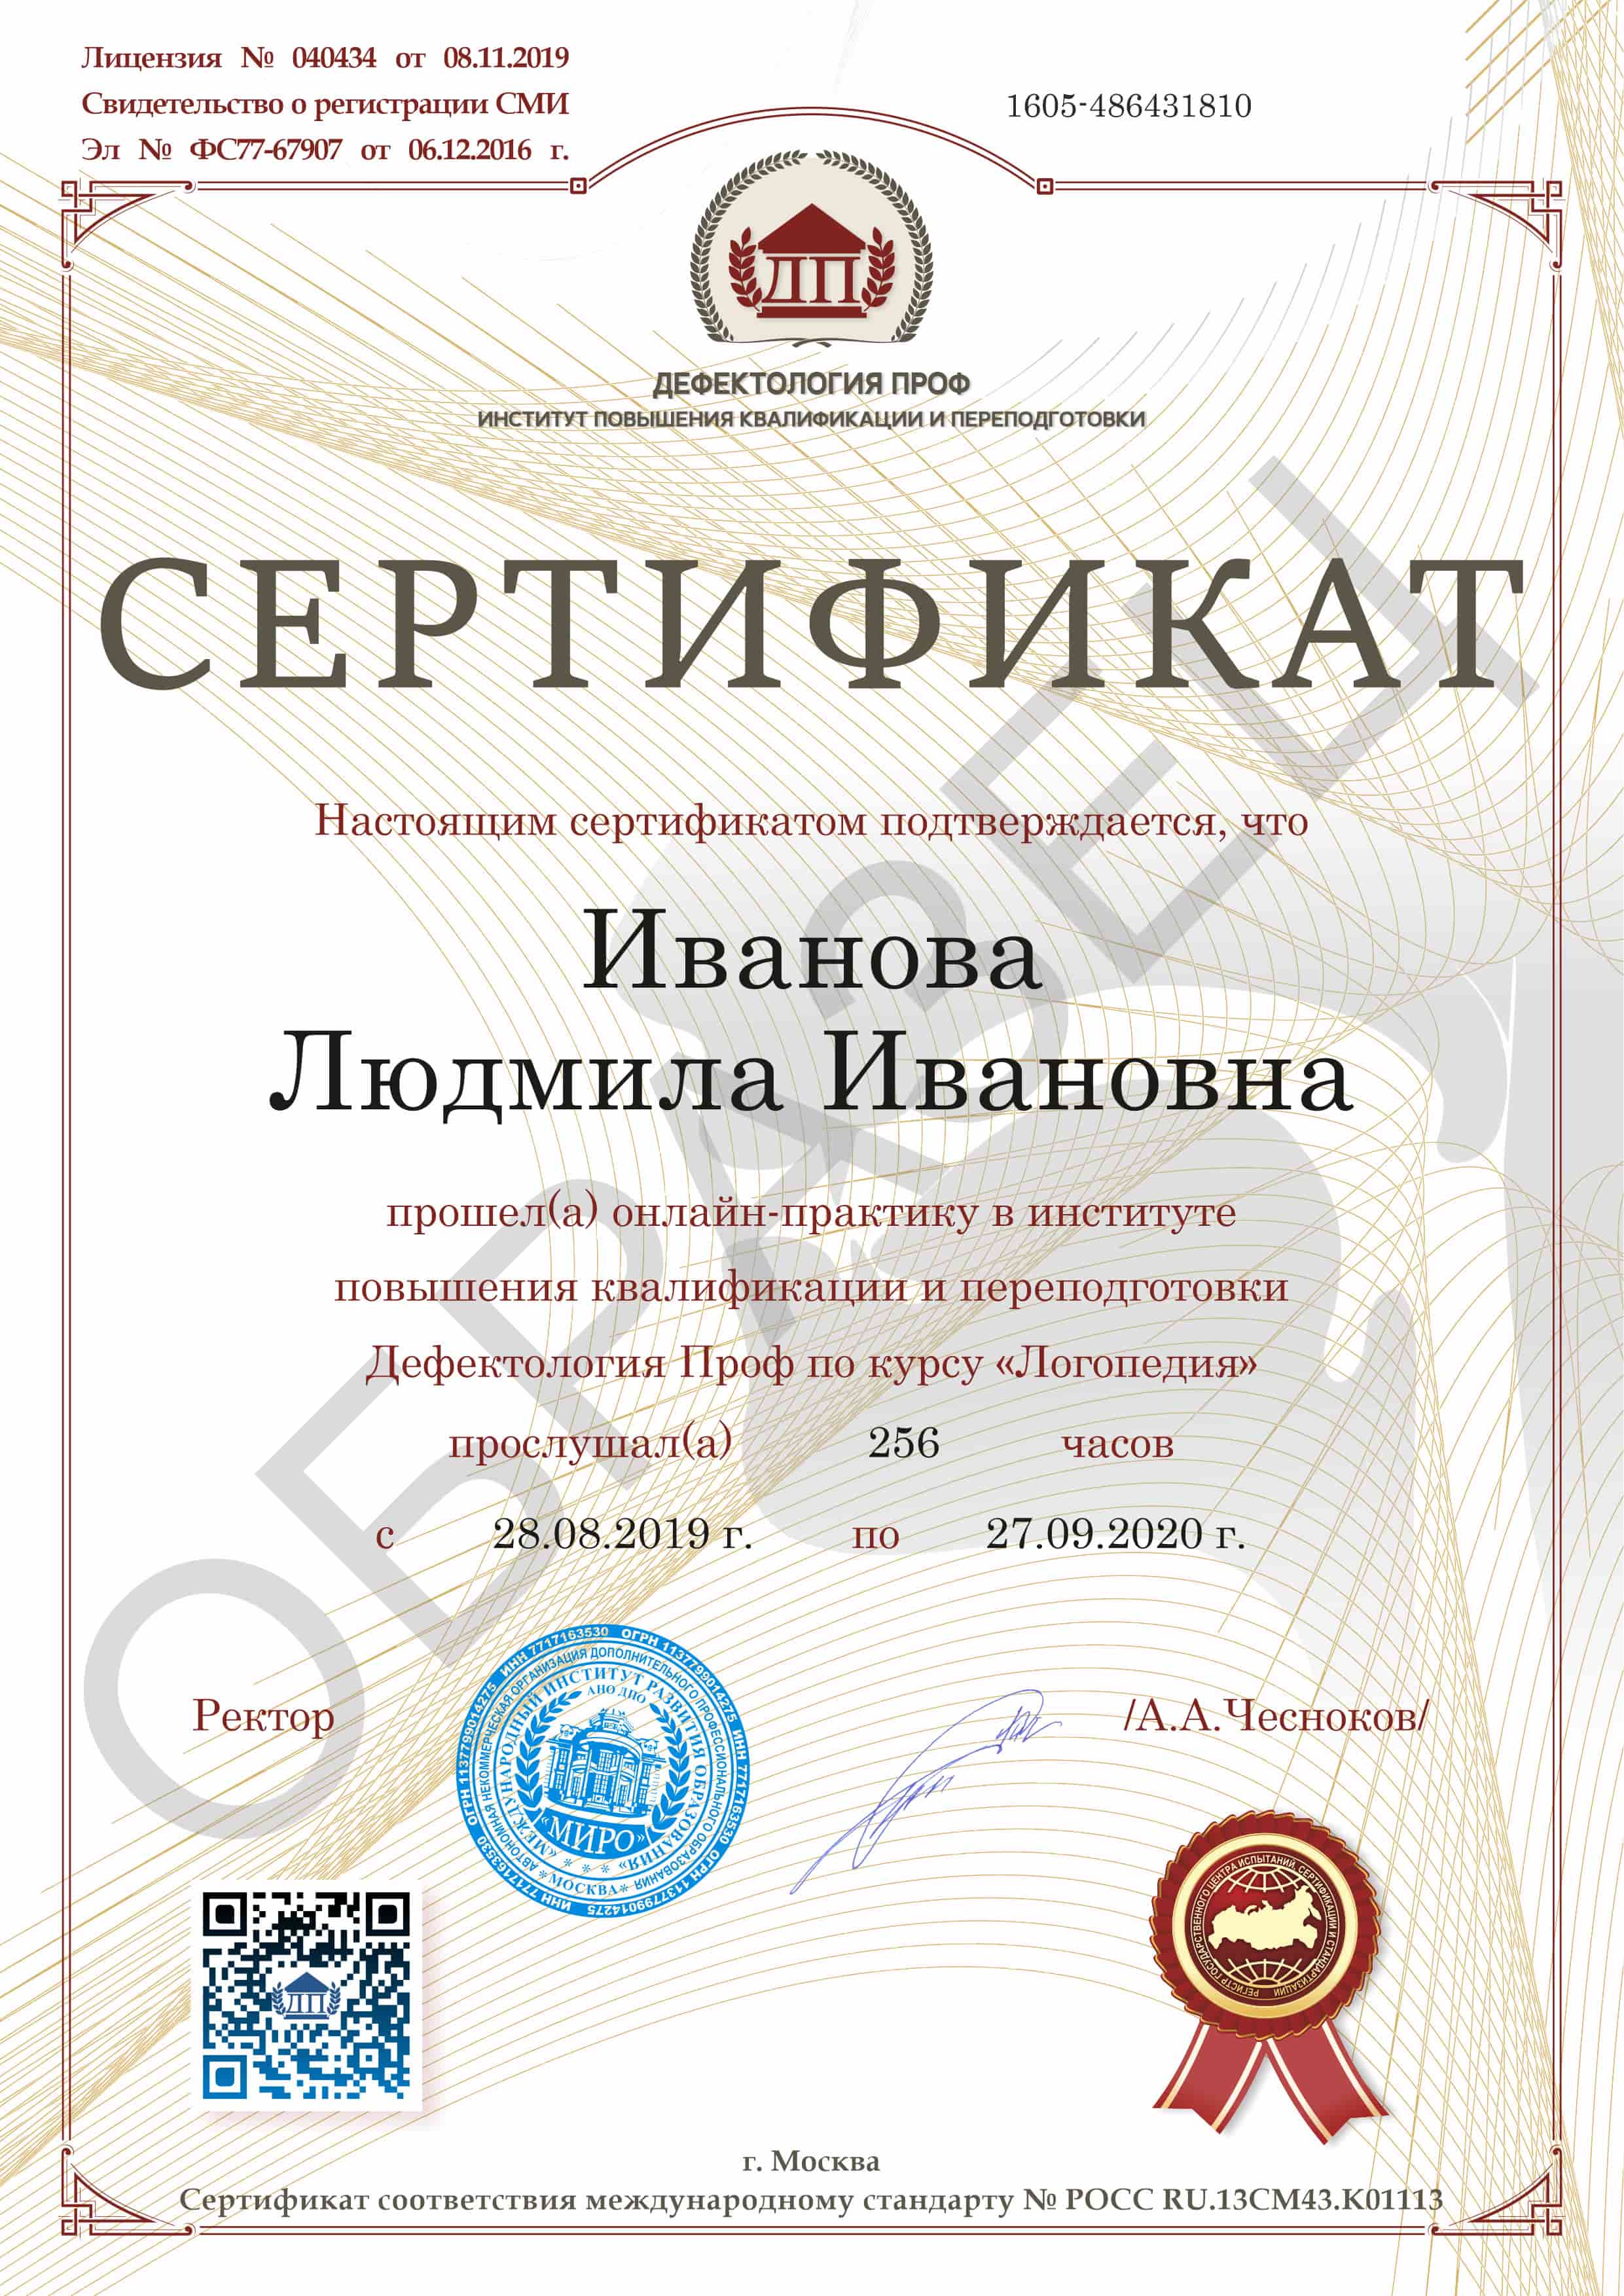 Сертификат о прохождении практики